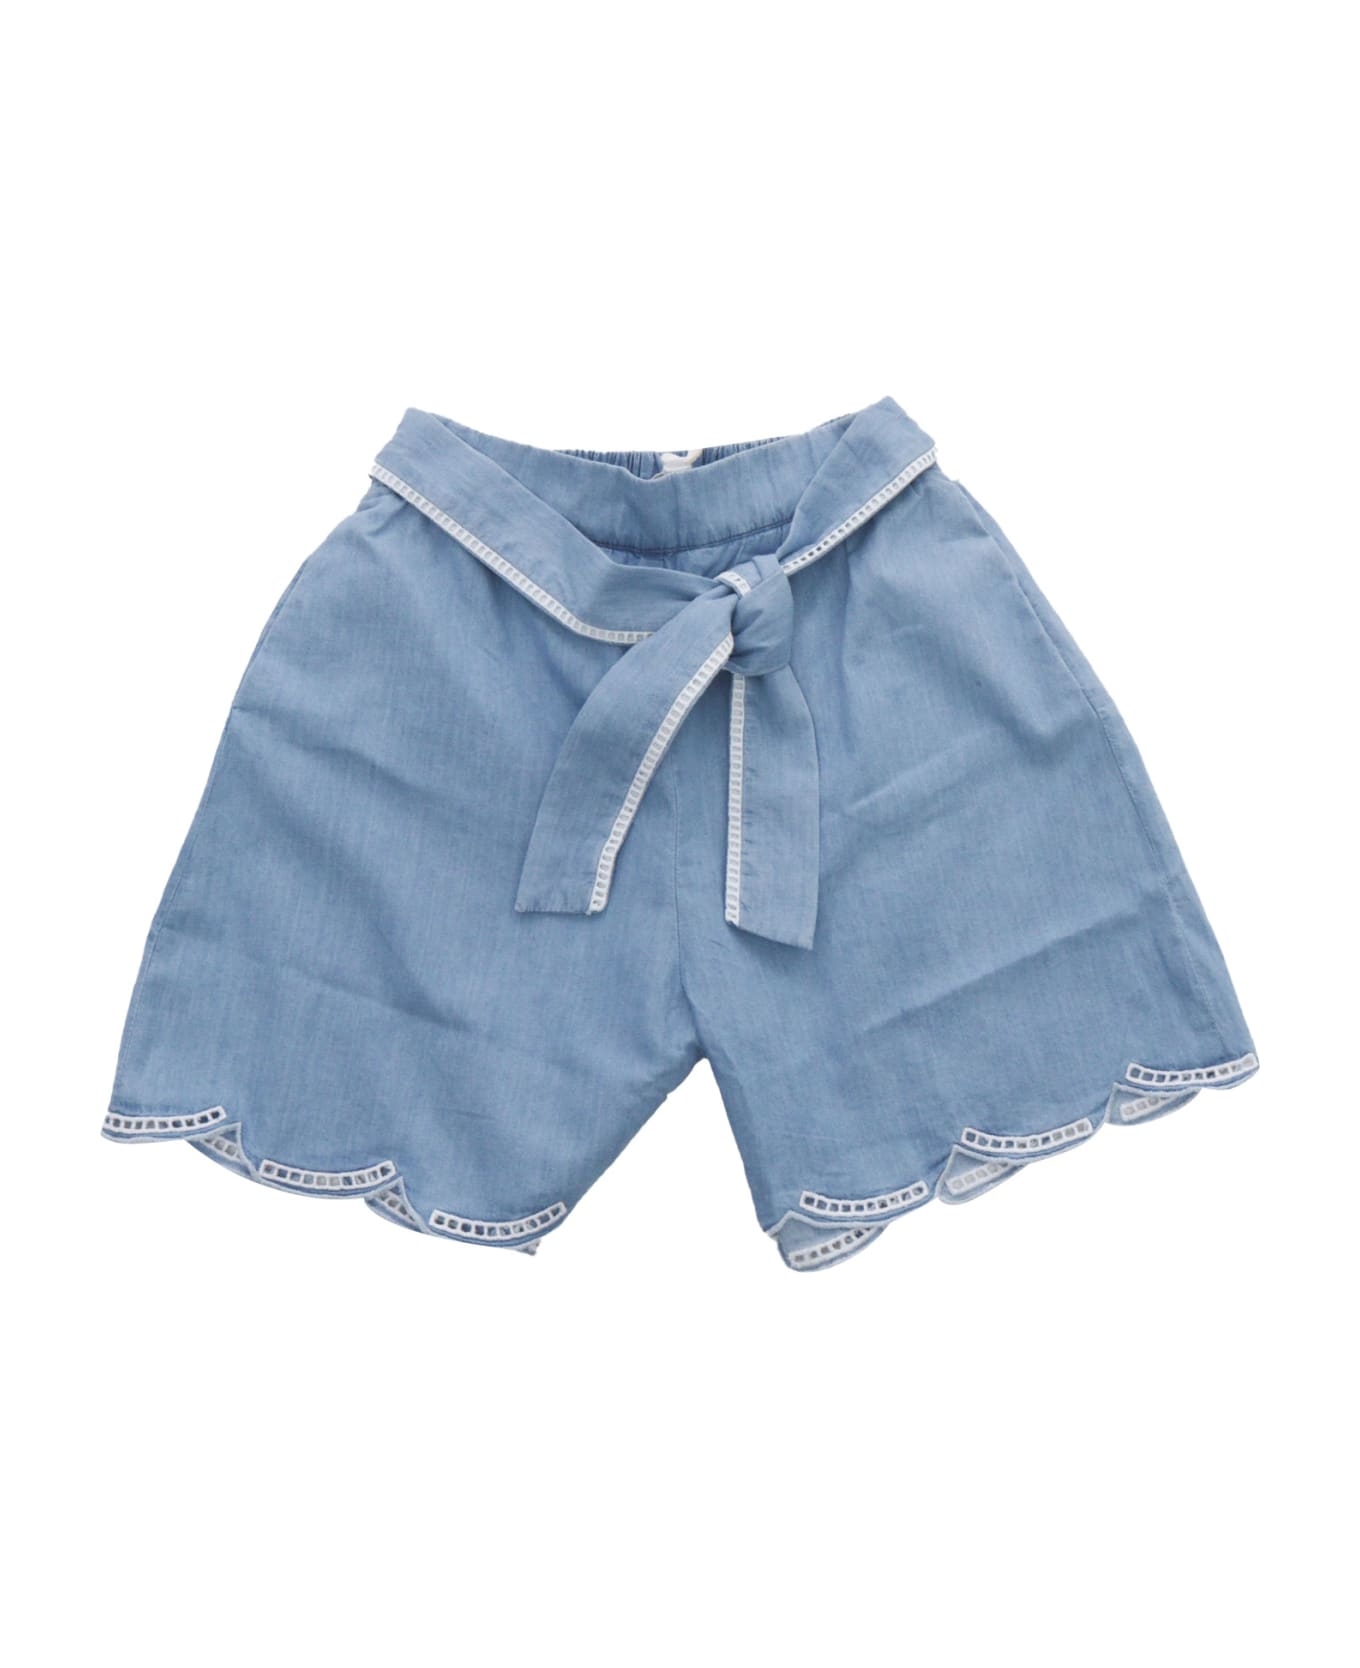 Chloé Denim Shorts - BLUE ボトムス